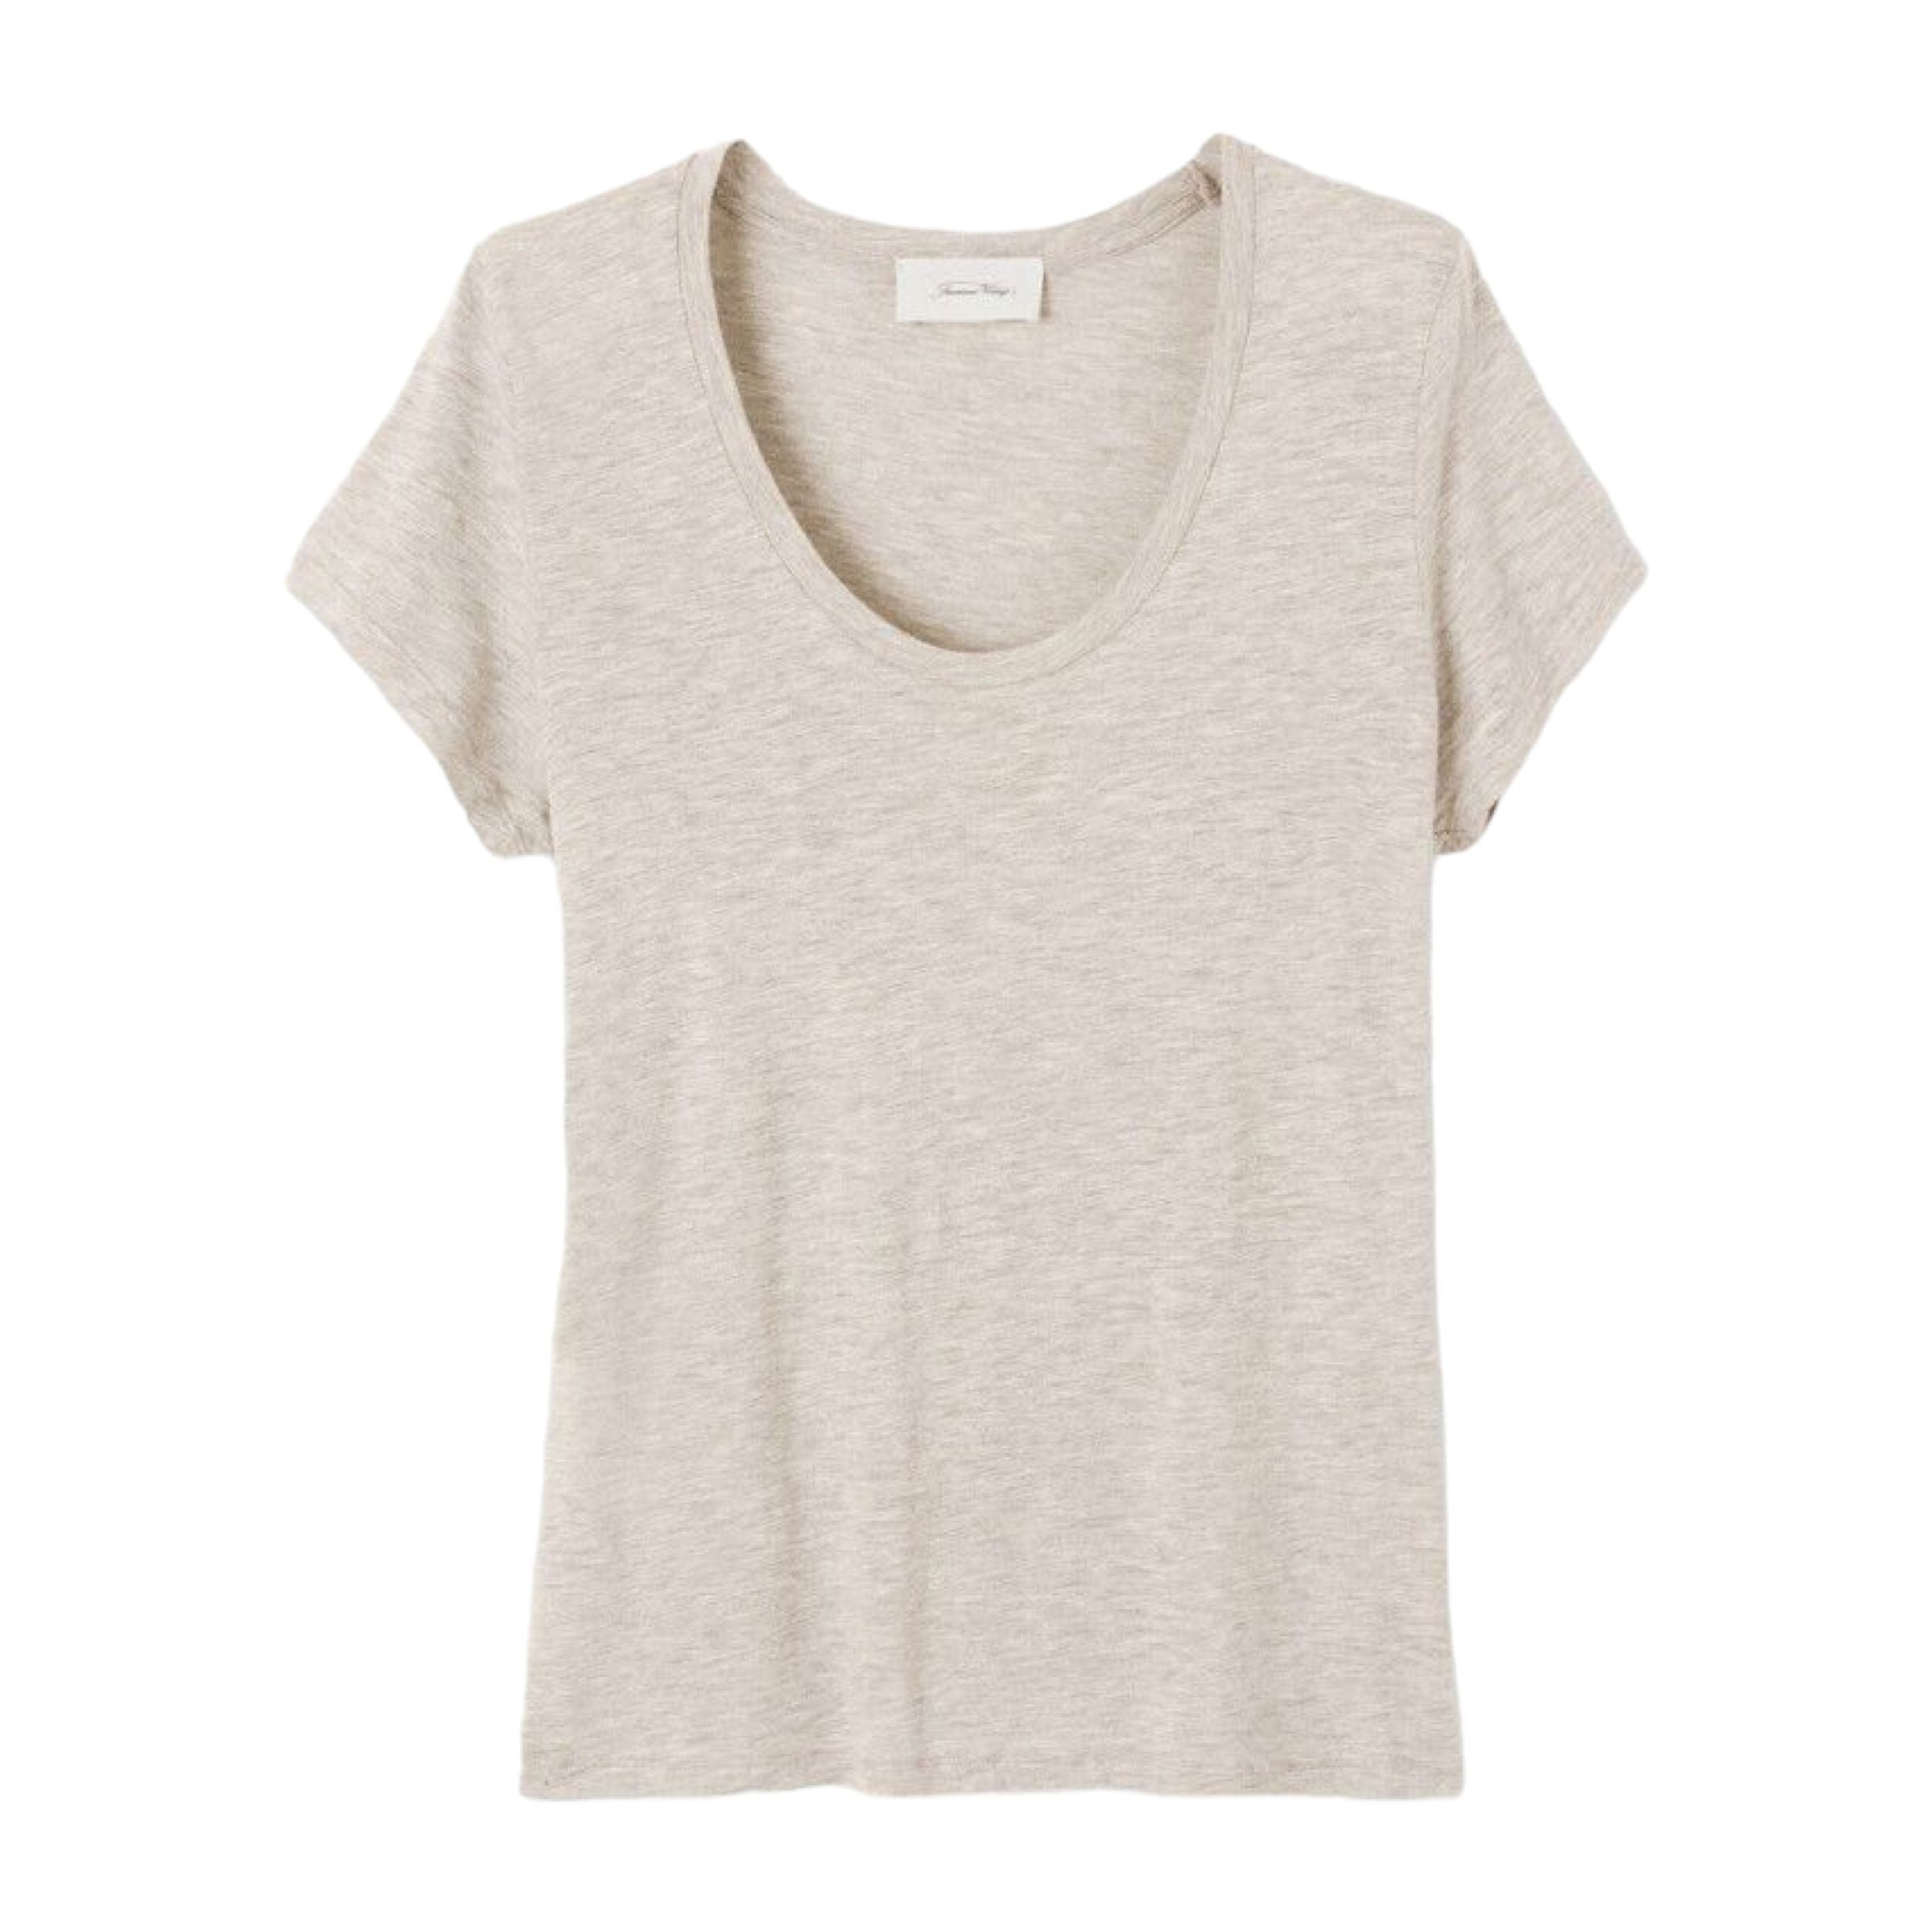 Women's Jacksonville Cropped T-shirt Creme Melange 